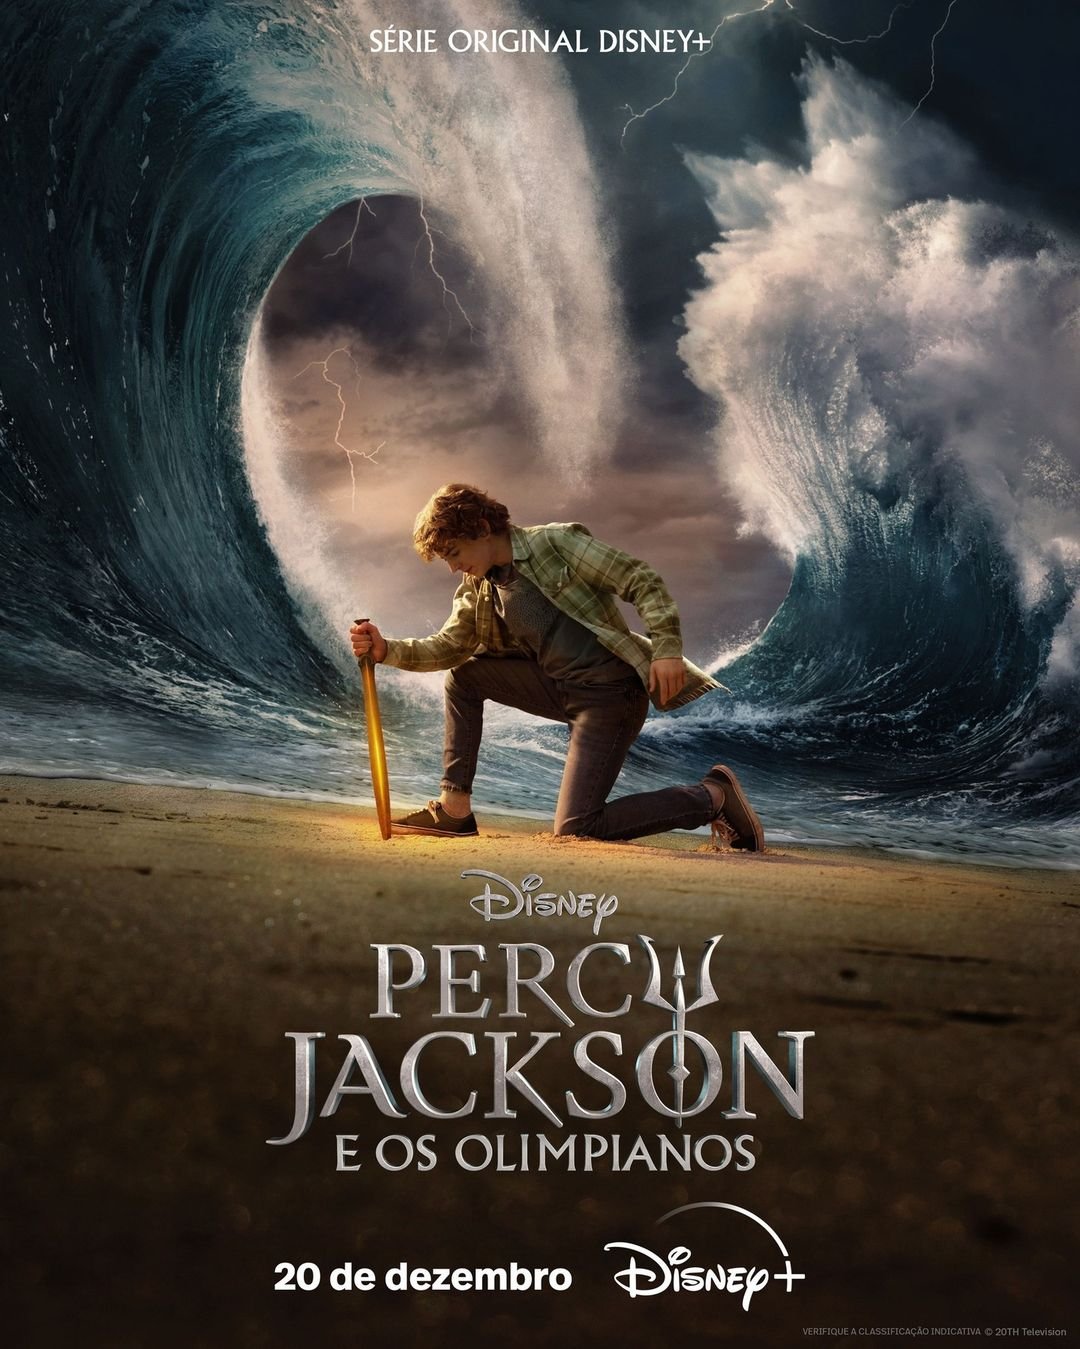 “Percy Jackson e os Olimpianos”